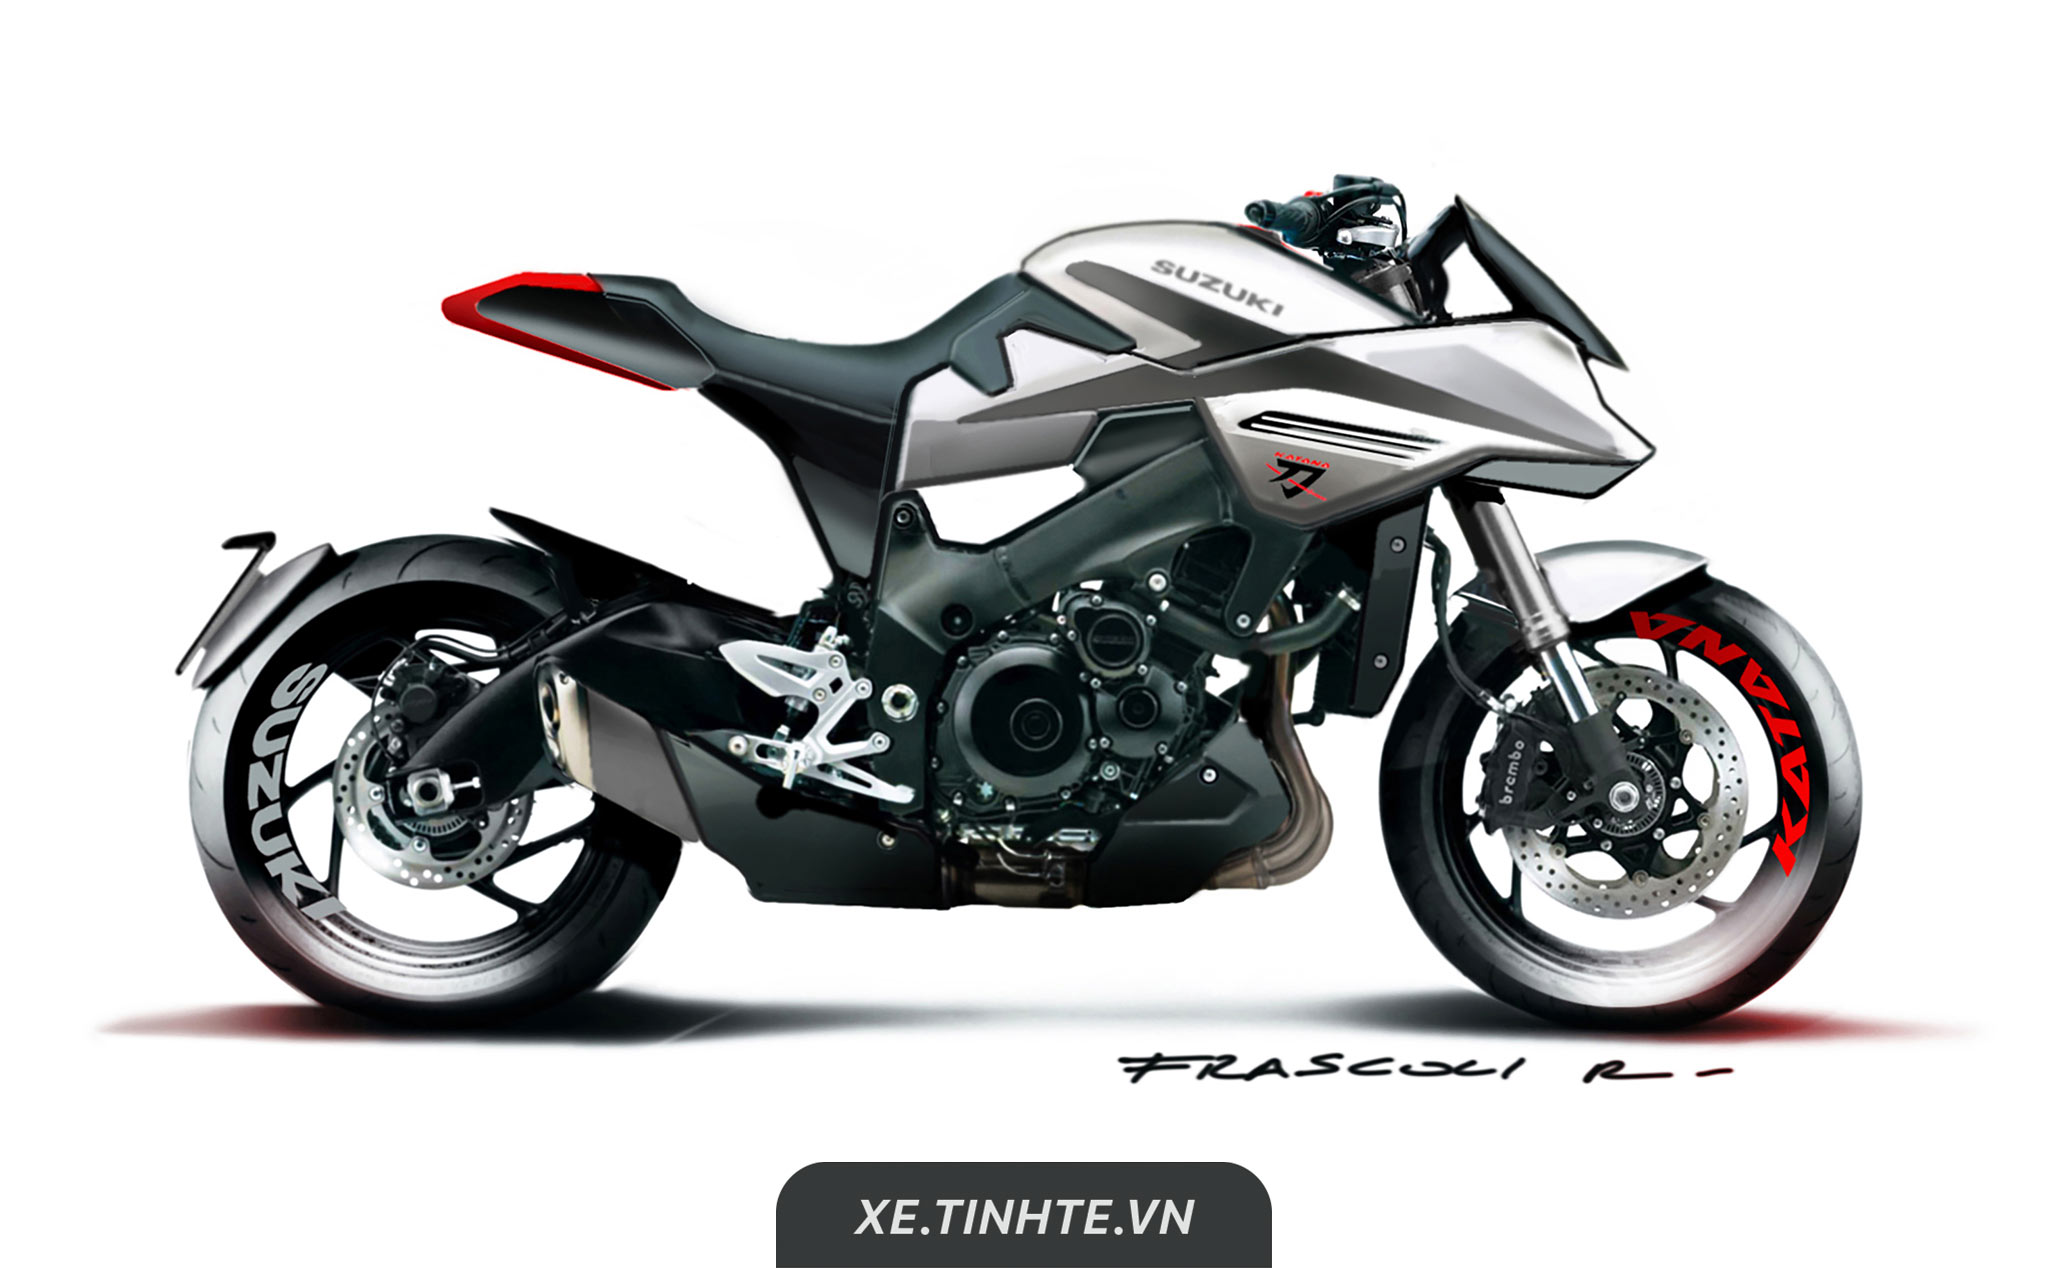 Sportbike Suzuki Katana 2019 sắp ra mắt, thiết kế lai naked, động cơ tăng áp